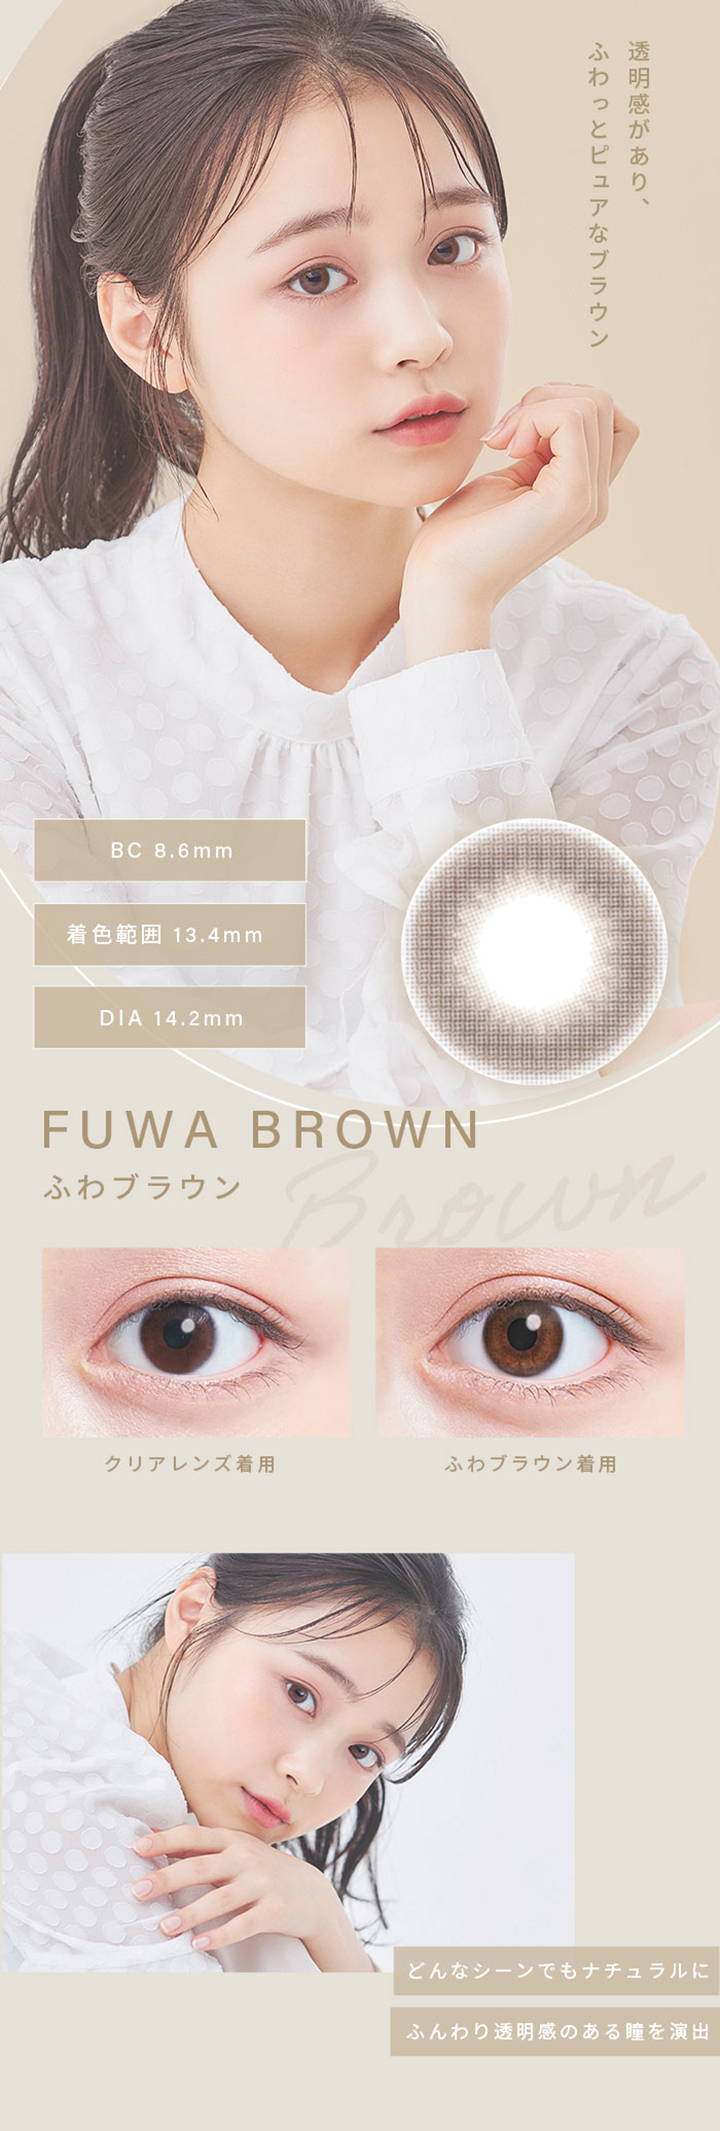 ふわブラウン(FUWA BROWN),透明感があり、ふわっとピュアなブラウン,BC8.6mm,着色直径13.5mm,DIA14.2mm,クリアレンズとふわブラウンの装用比較写真,どんなシーンでもナチュラルにふんわり透明感のある瞳を演出|ふわナチュラル(FUWA NATURAL) ワンデーコンタクトレンズ